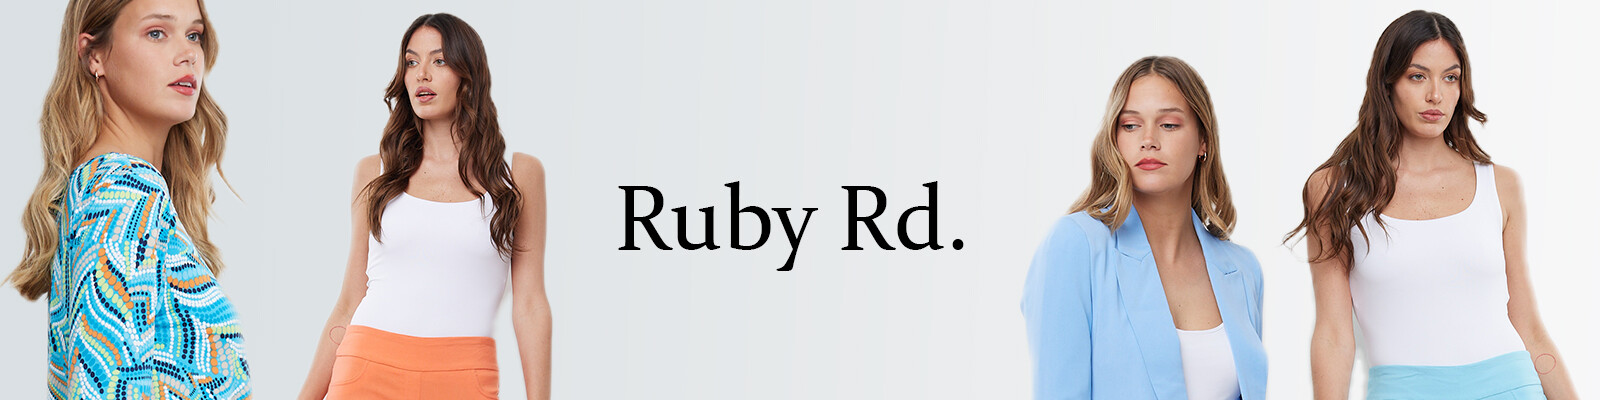 Ruby Rd.